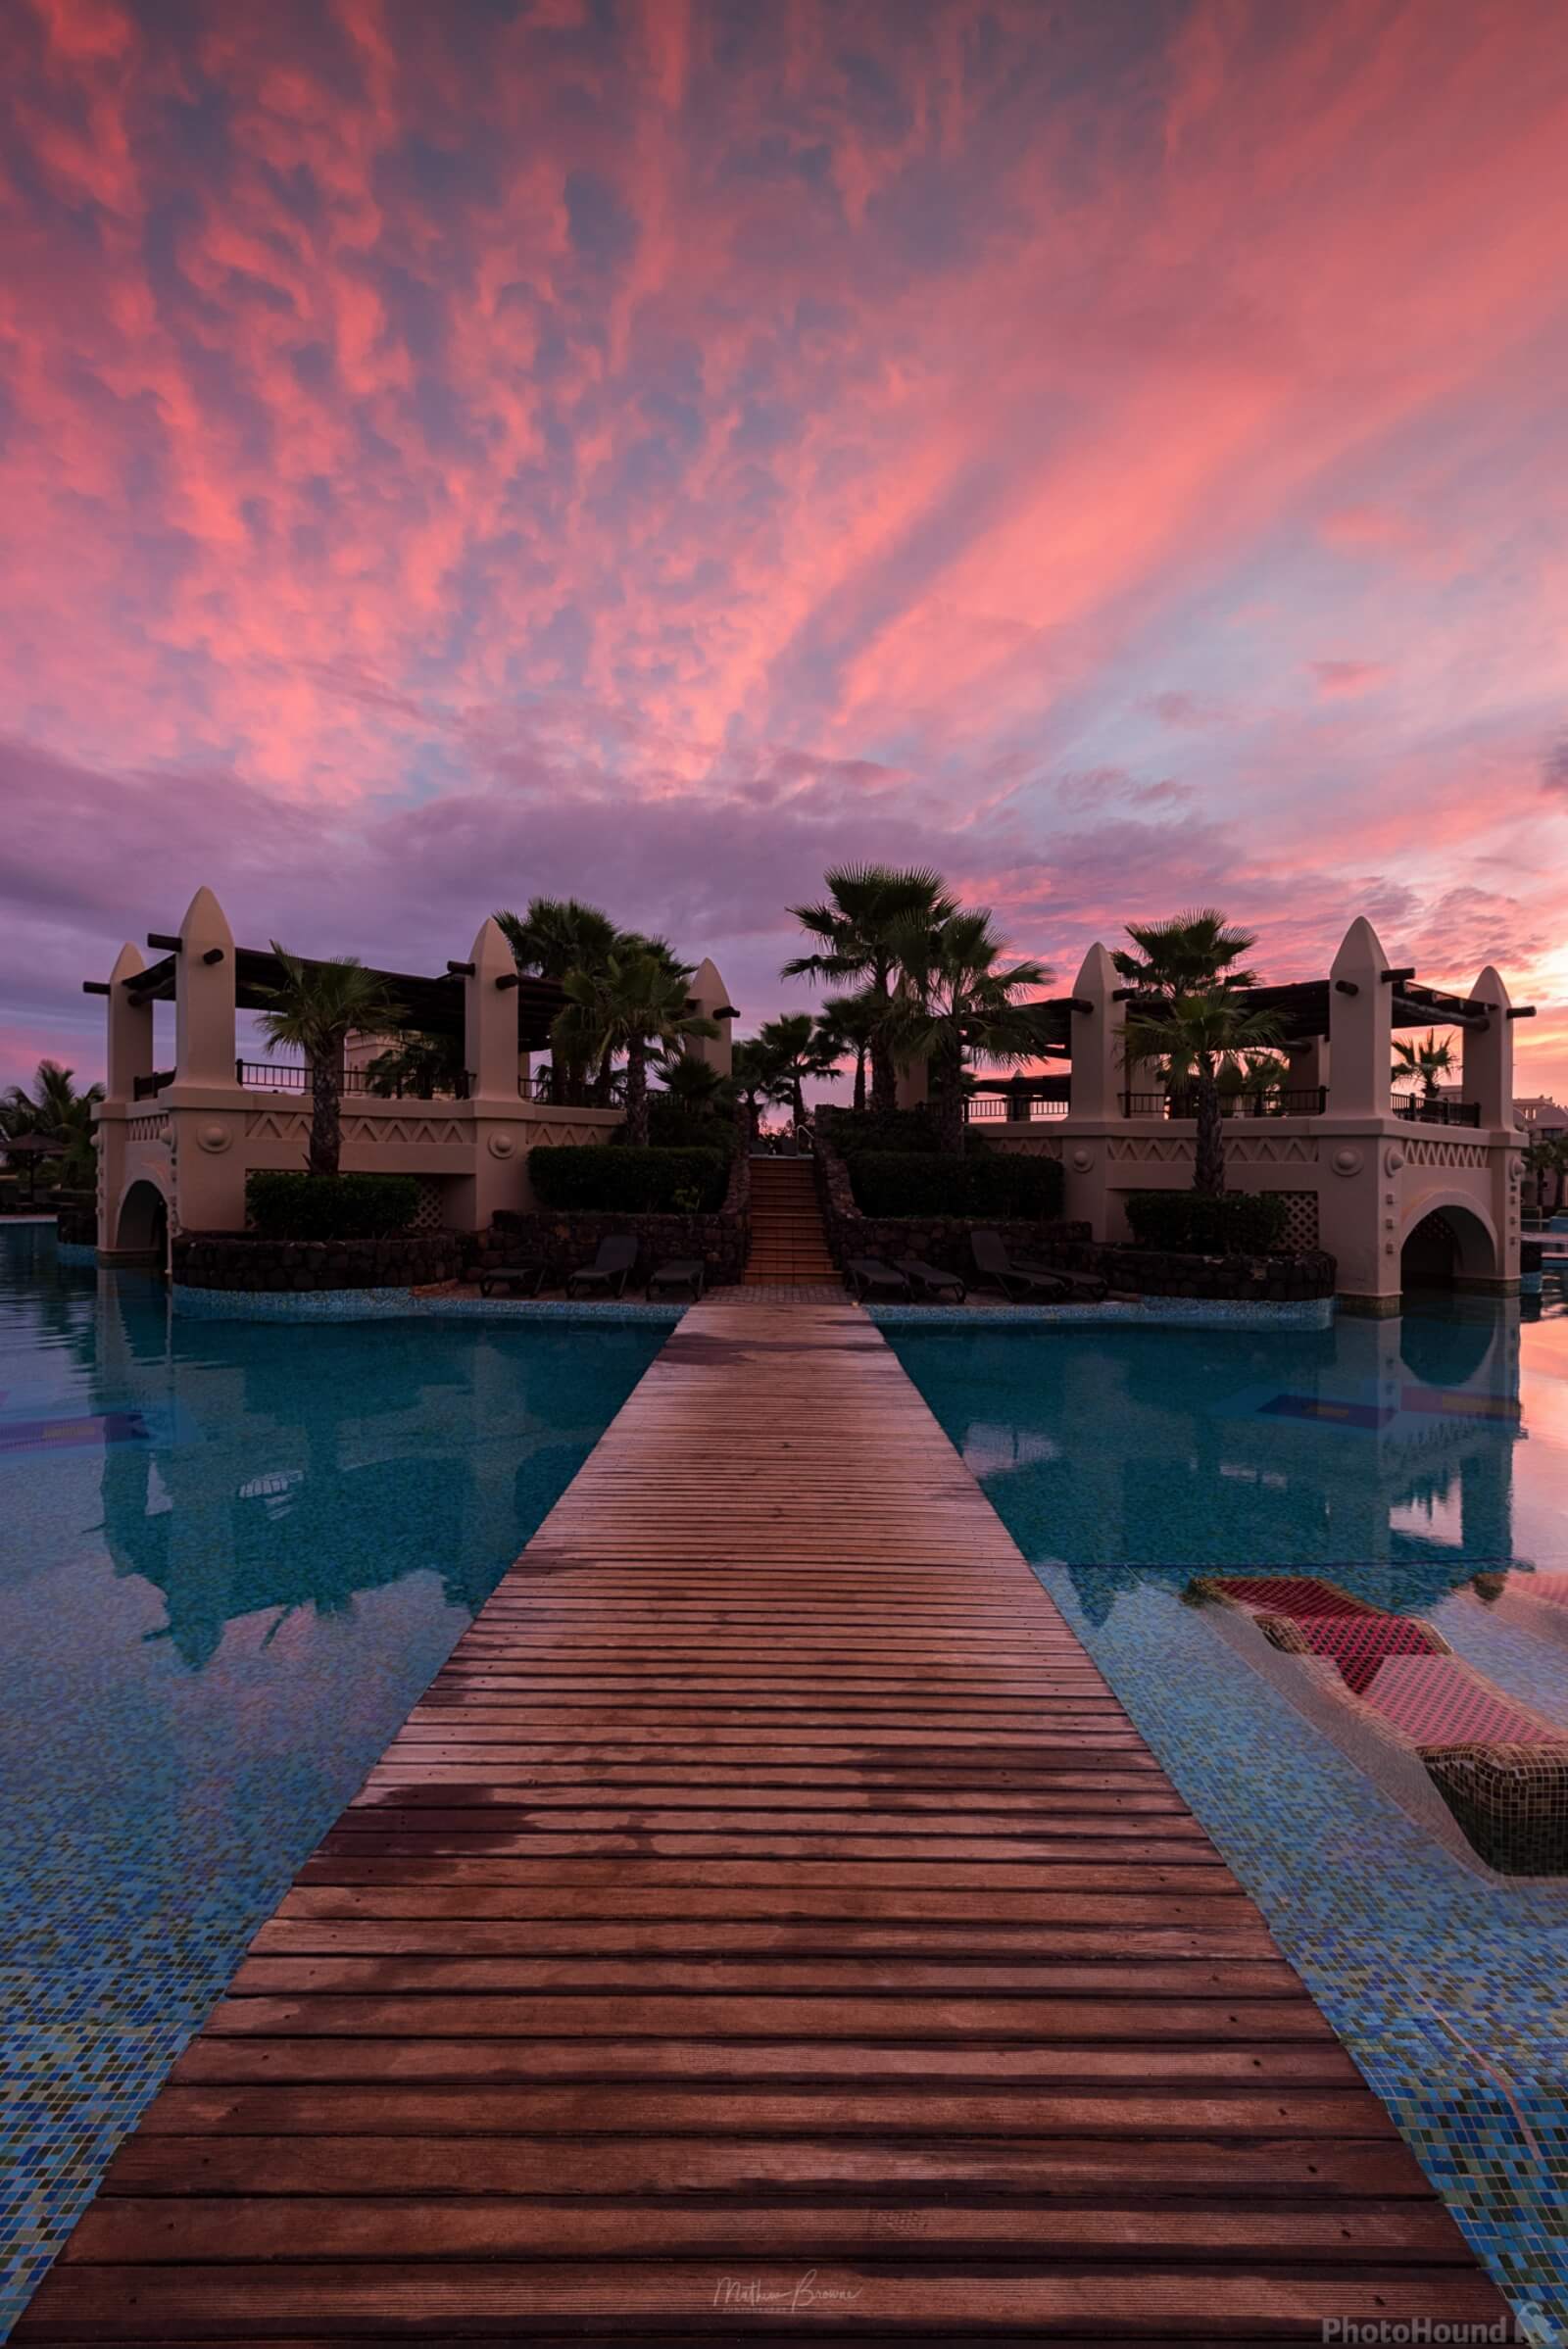 Image of Riu Touareg Resort by Mathew Browne